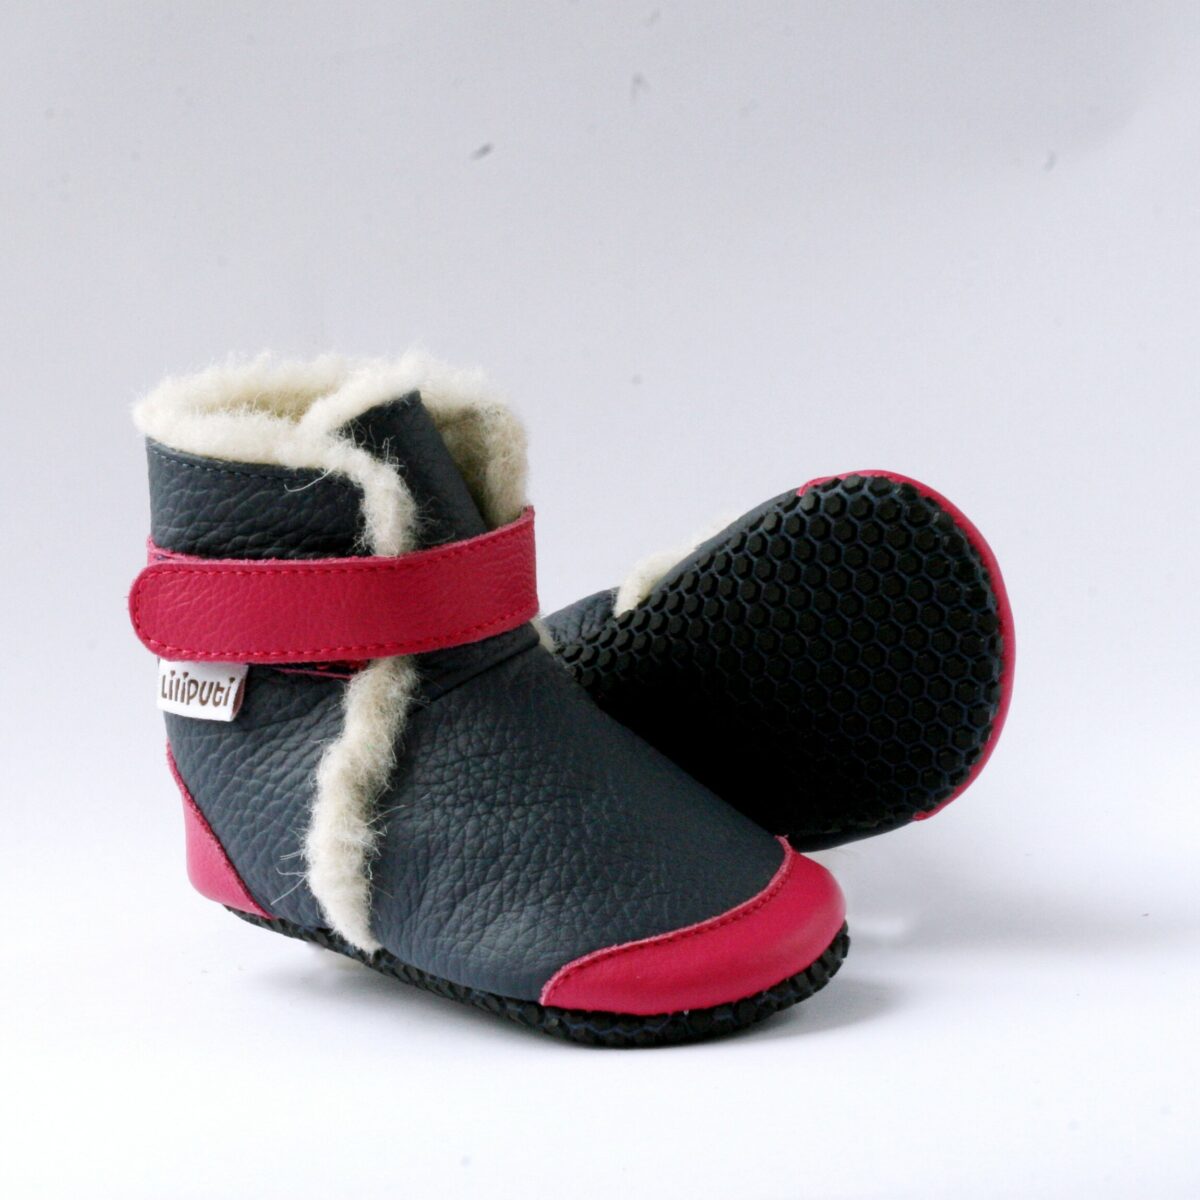 Liliputi Aspen saapad kummitäppidega Laste barefoot jalatsid - HellyK - Kvaliteetsed lasteriided, villariided, barefoot jalatsid